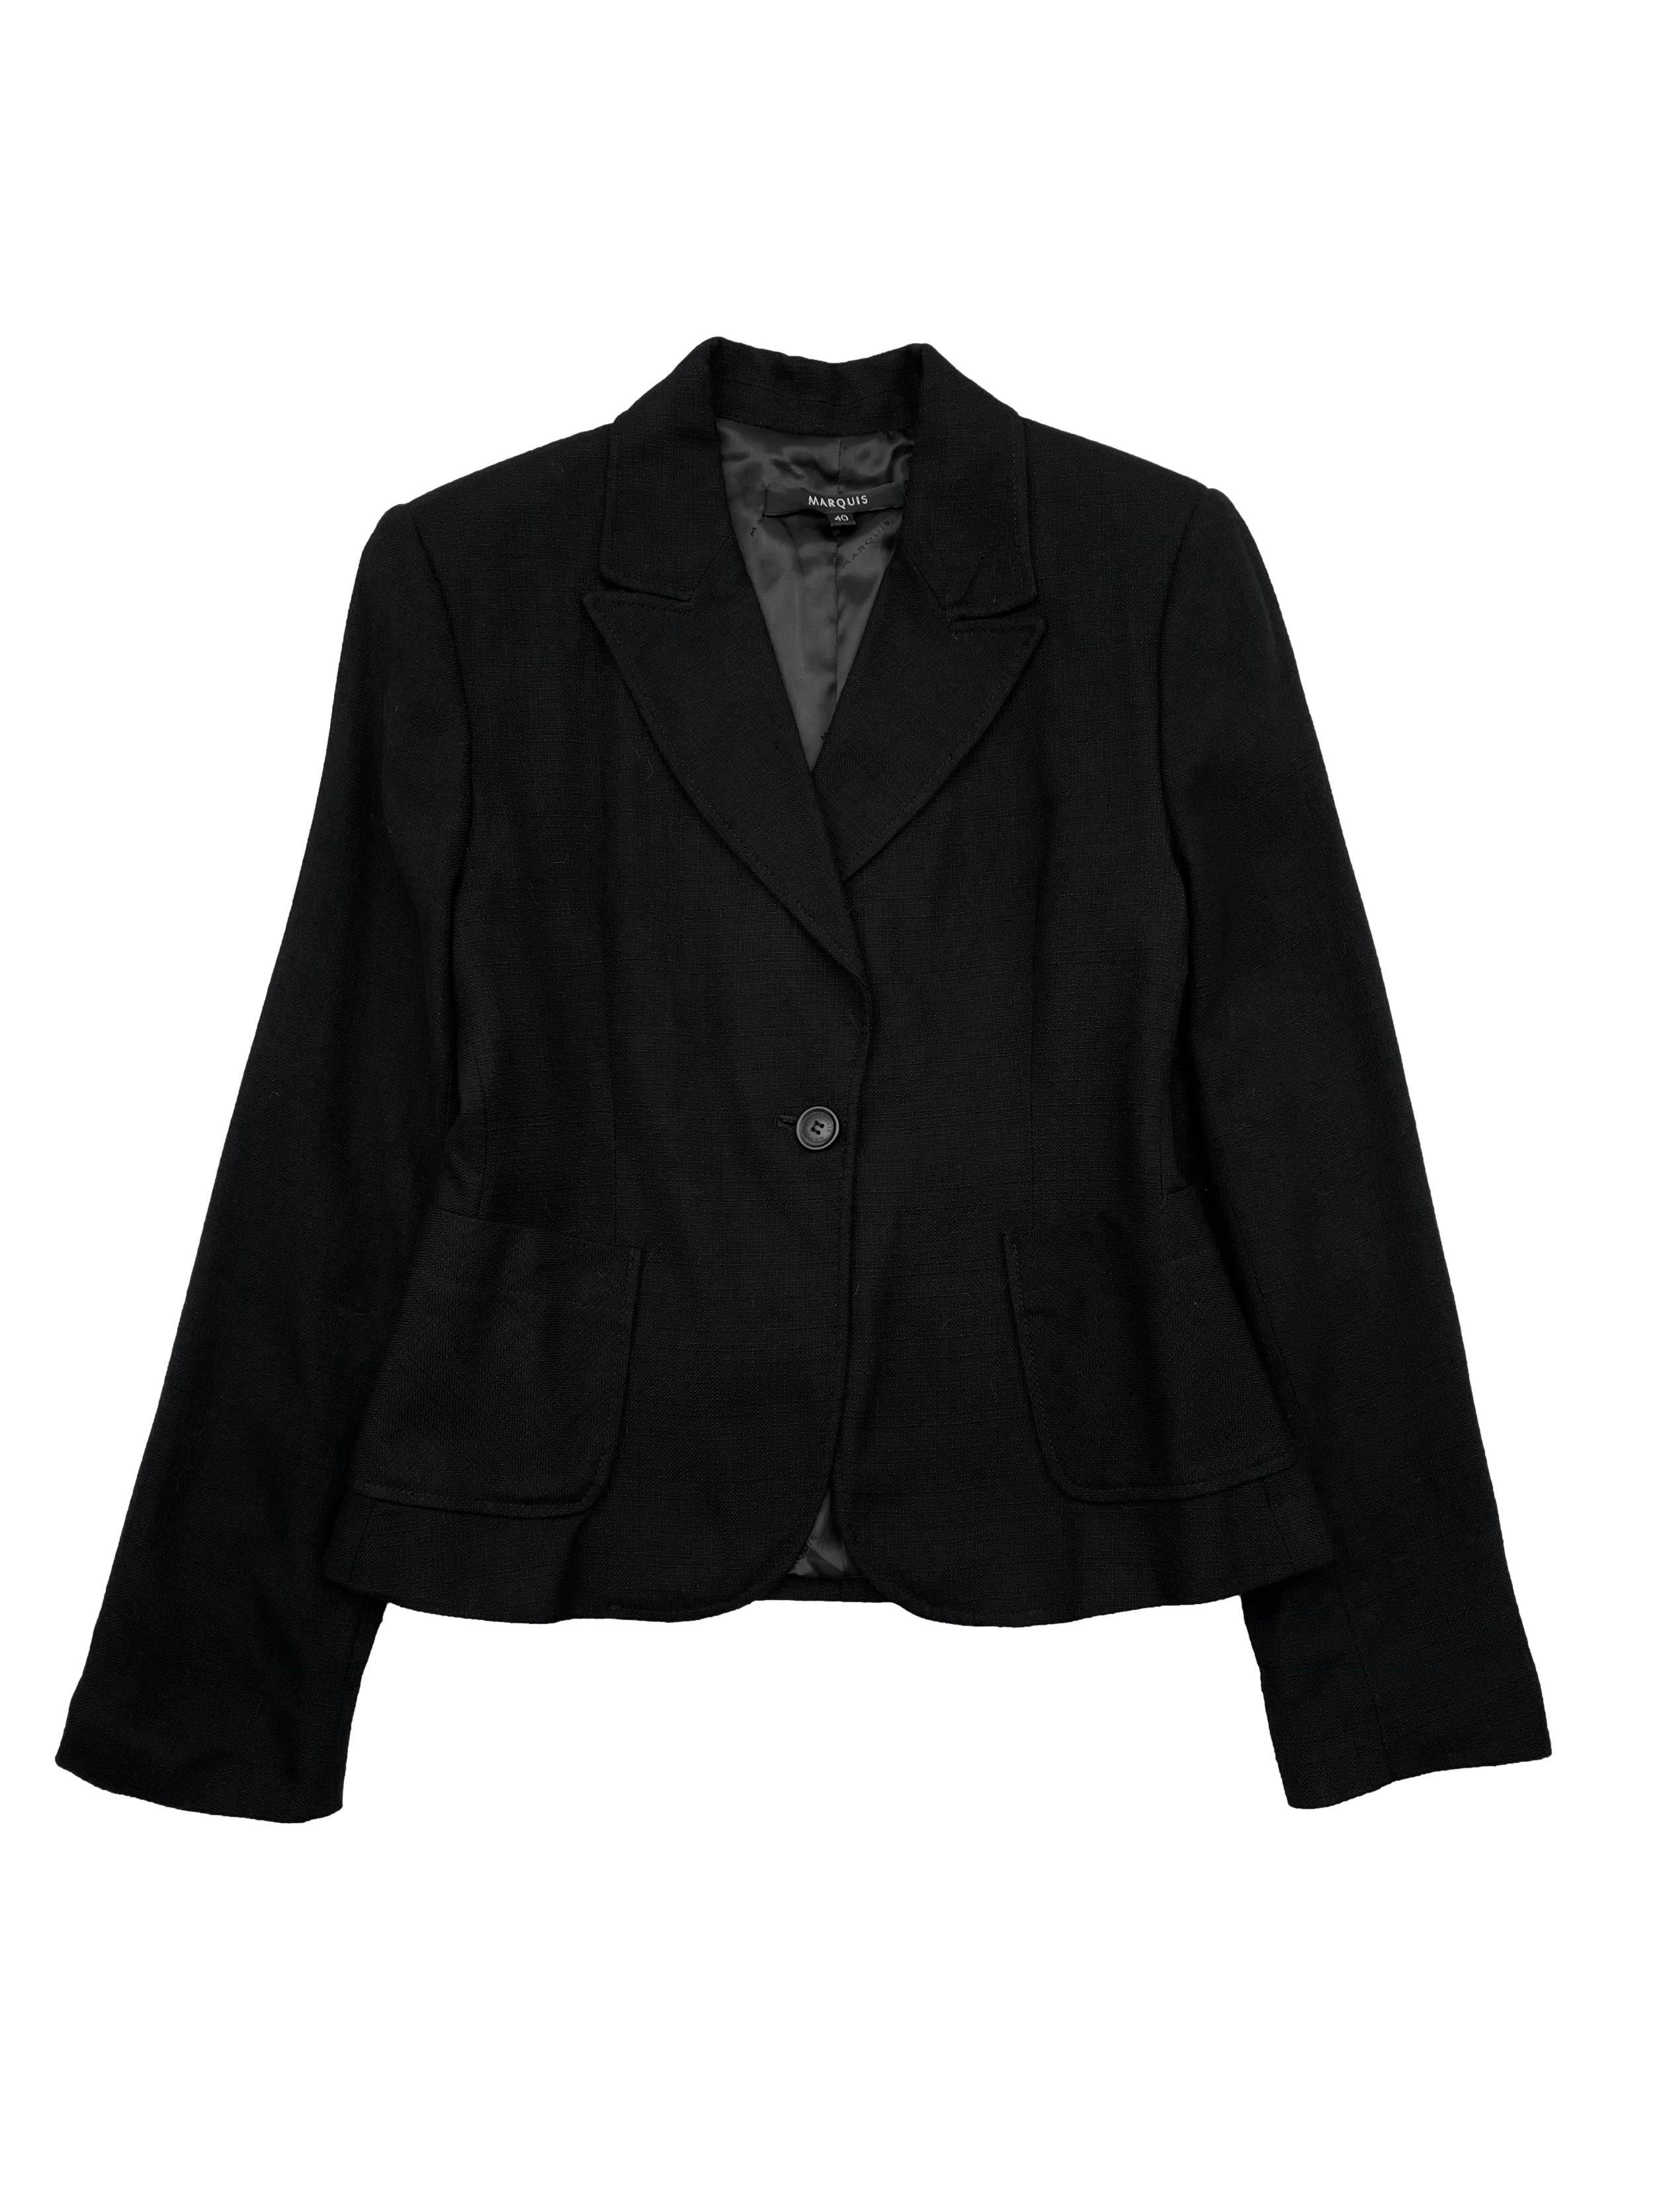 Saco blazer negro Marquis, con hombreras y bolsillos delanteros, forrado. Busto 88cm, Largo 58cm. 